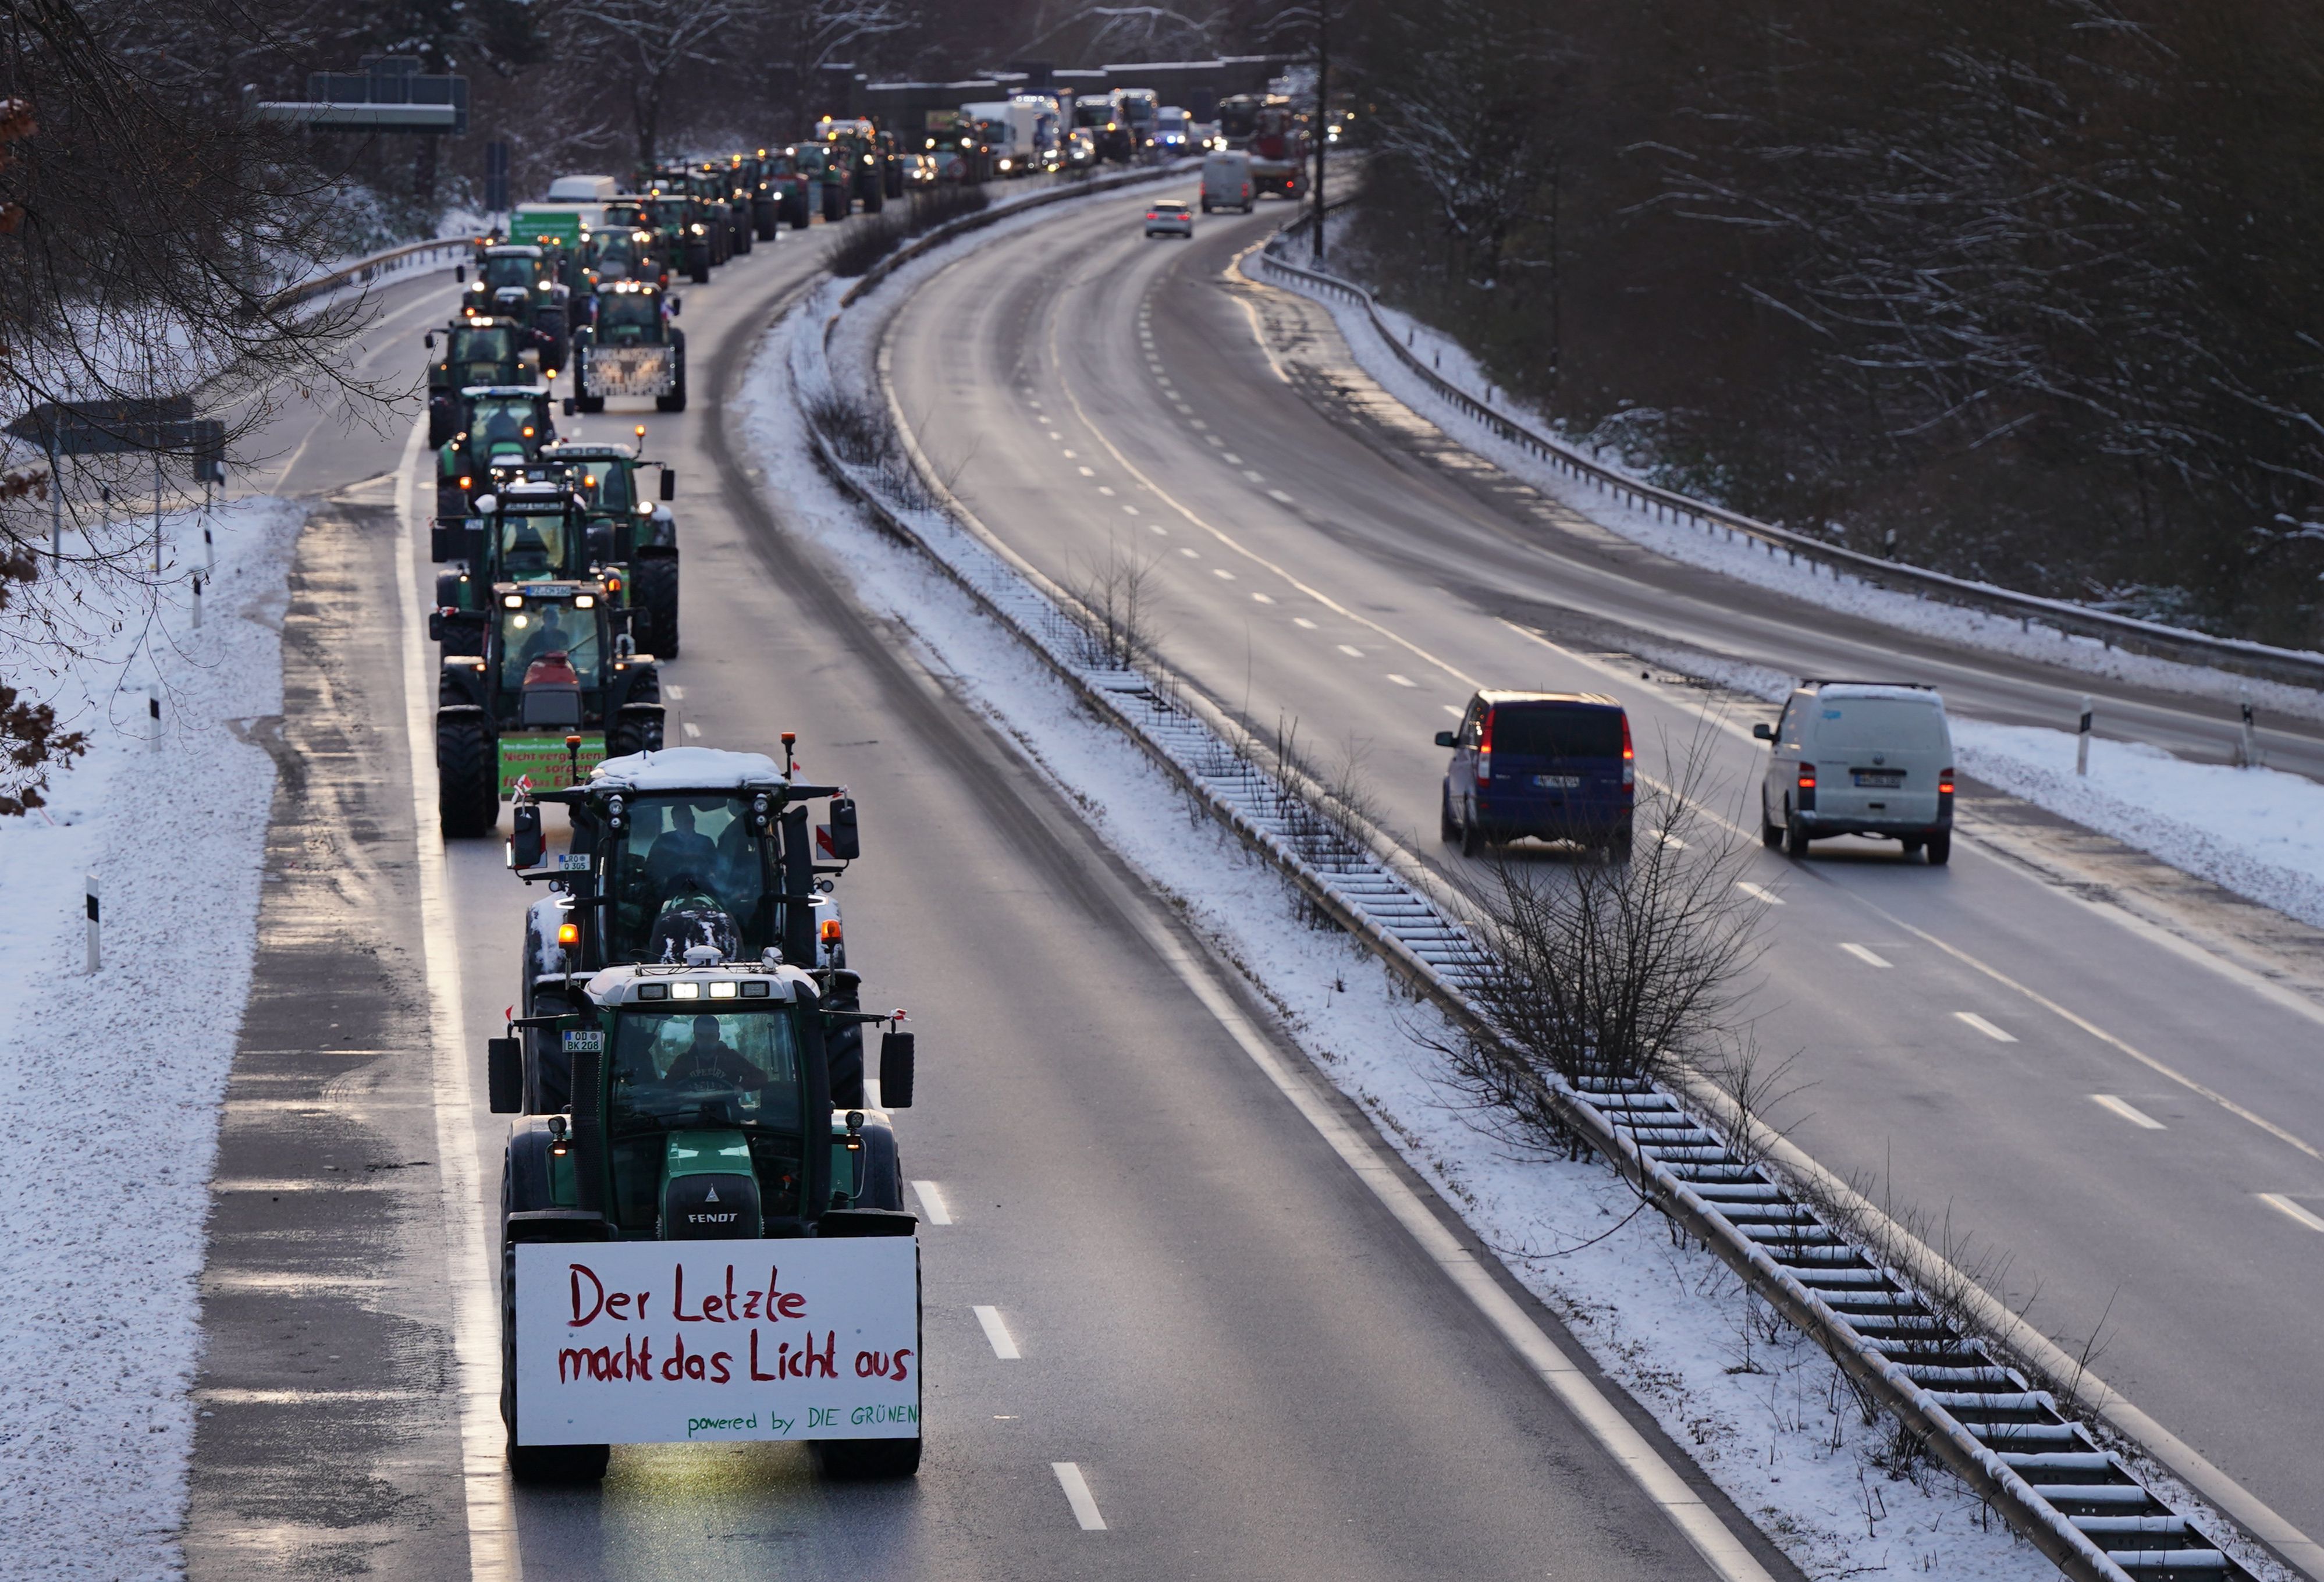 Die Landwirt:innen in Hamburg demonstrieren am Montag (8. Januar) gegen die Agrarpolitik der Bundesregierung. Hunderte Traktoren fahren über die Bundesstraße B5 in Richtung Hamburg Innenstadt.